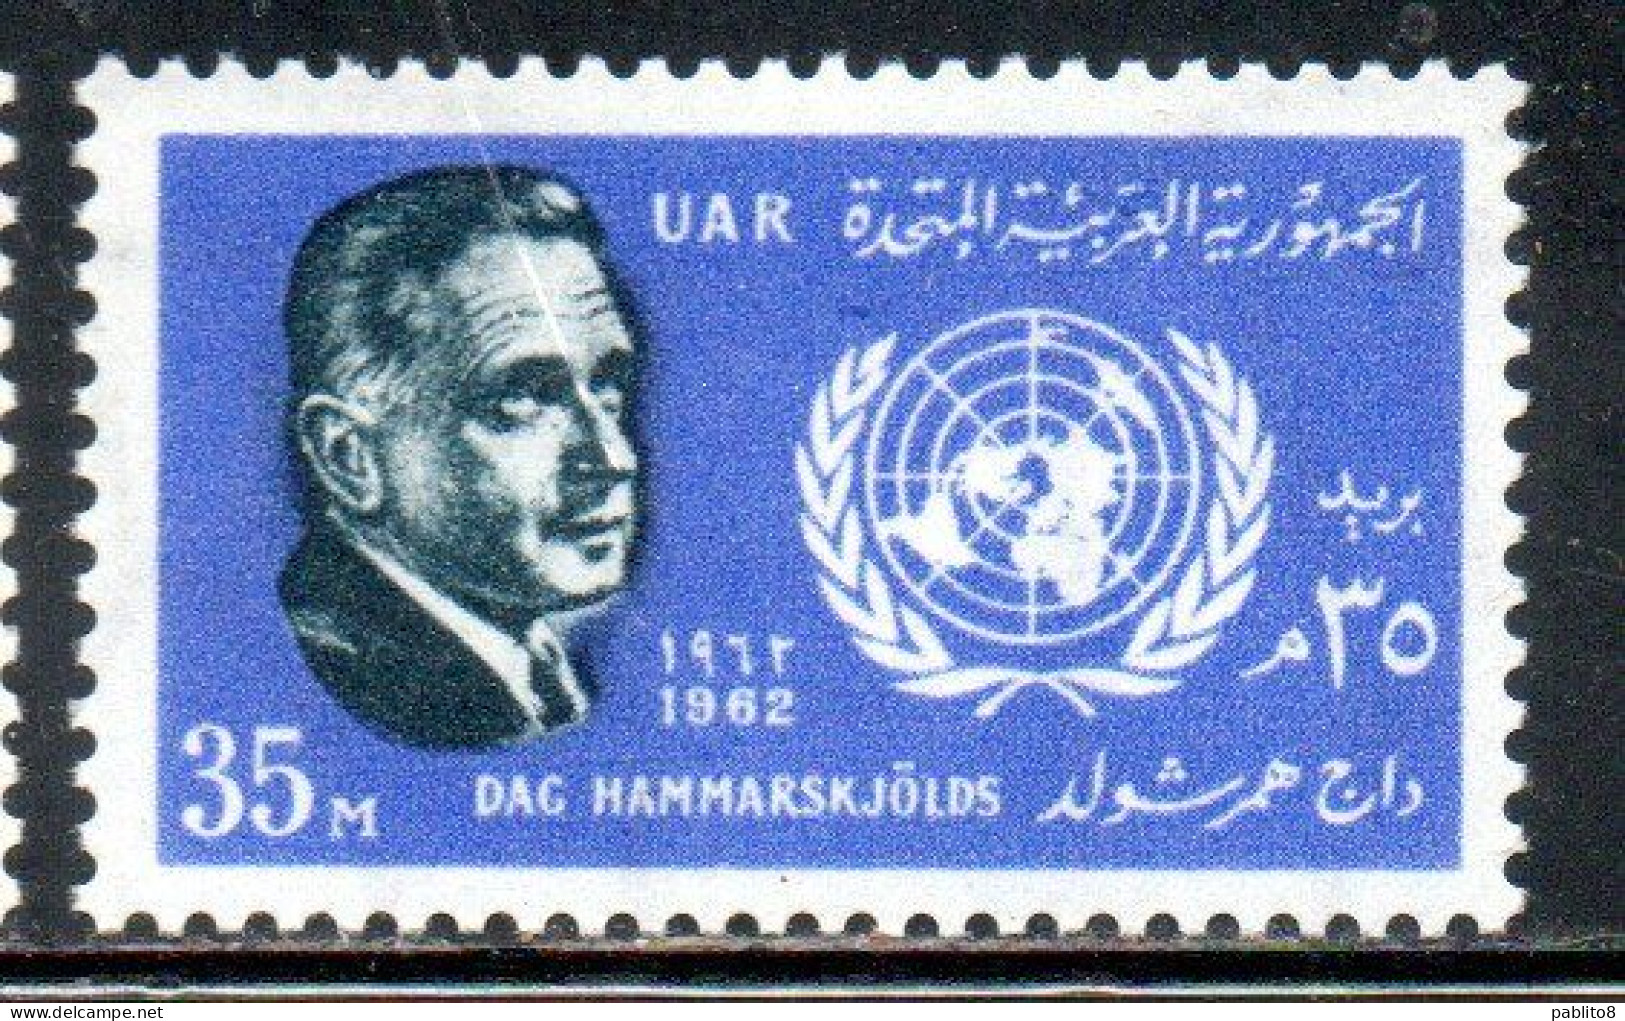 UAR EGYPT EGITTO 1962 DAG HAMMARSKJOLD SECRETARY GENERAL OF THE UN ONU 35m MNH - Ungebraucht